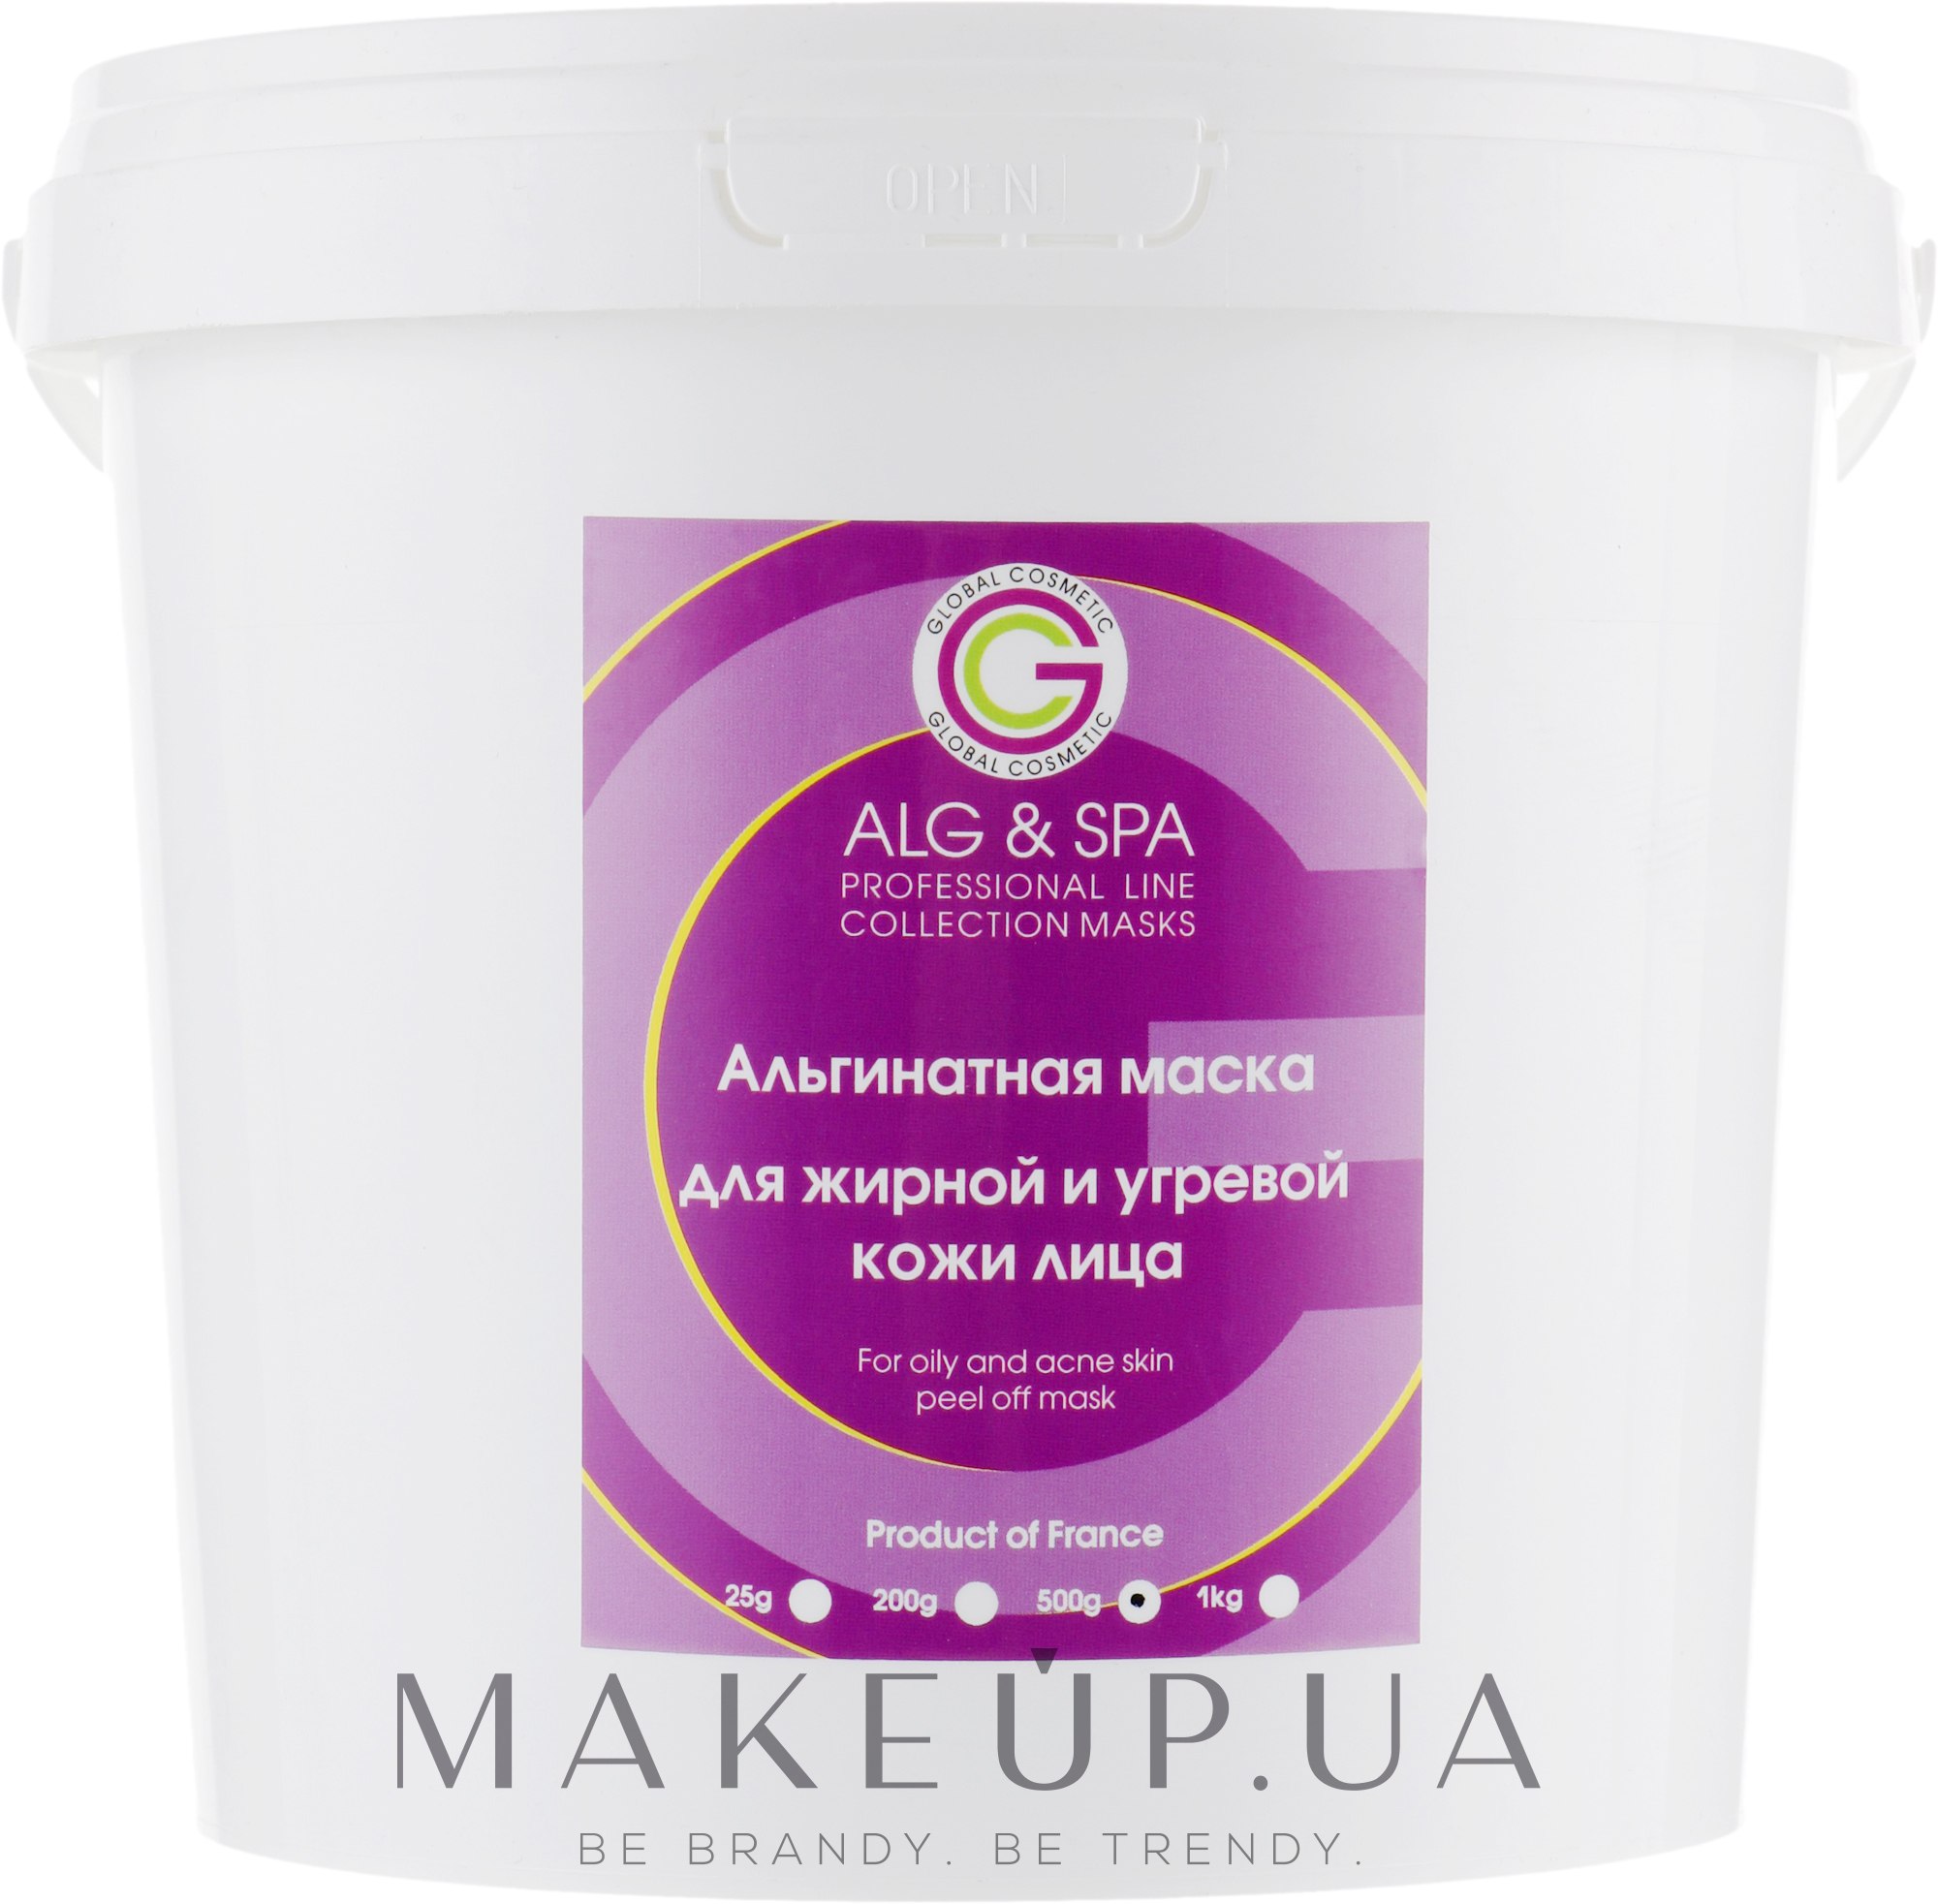 Альгинатная маска для жирной и угревой кожи - ALG & SPA Professional Line Collection Masks For Oily And Acne Skin Peel Off Mask — фото 500g